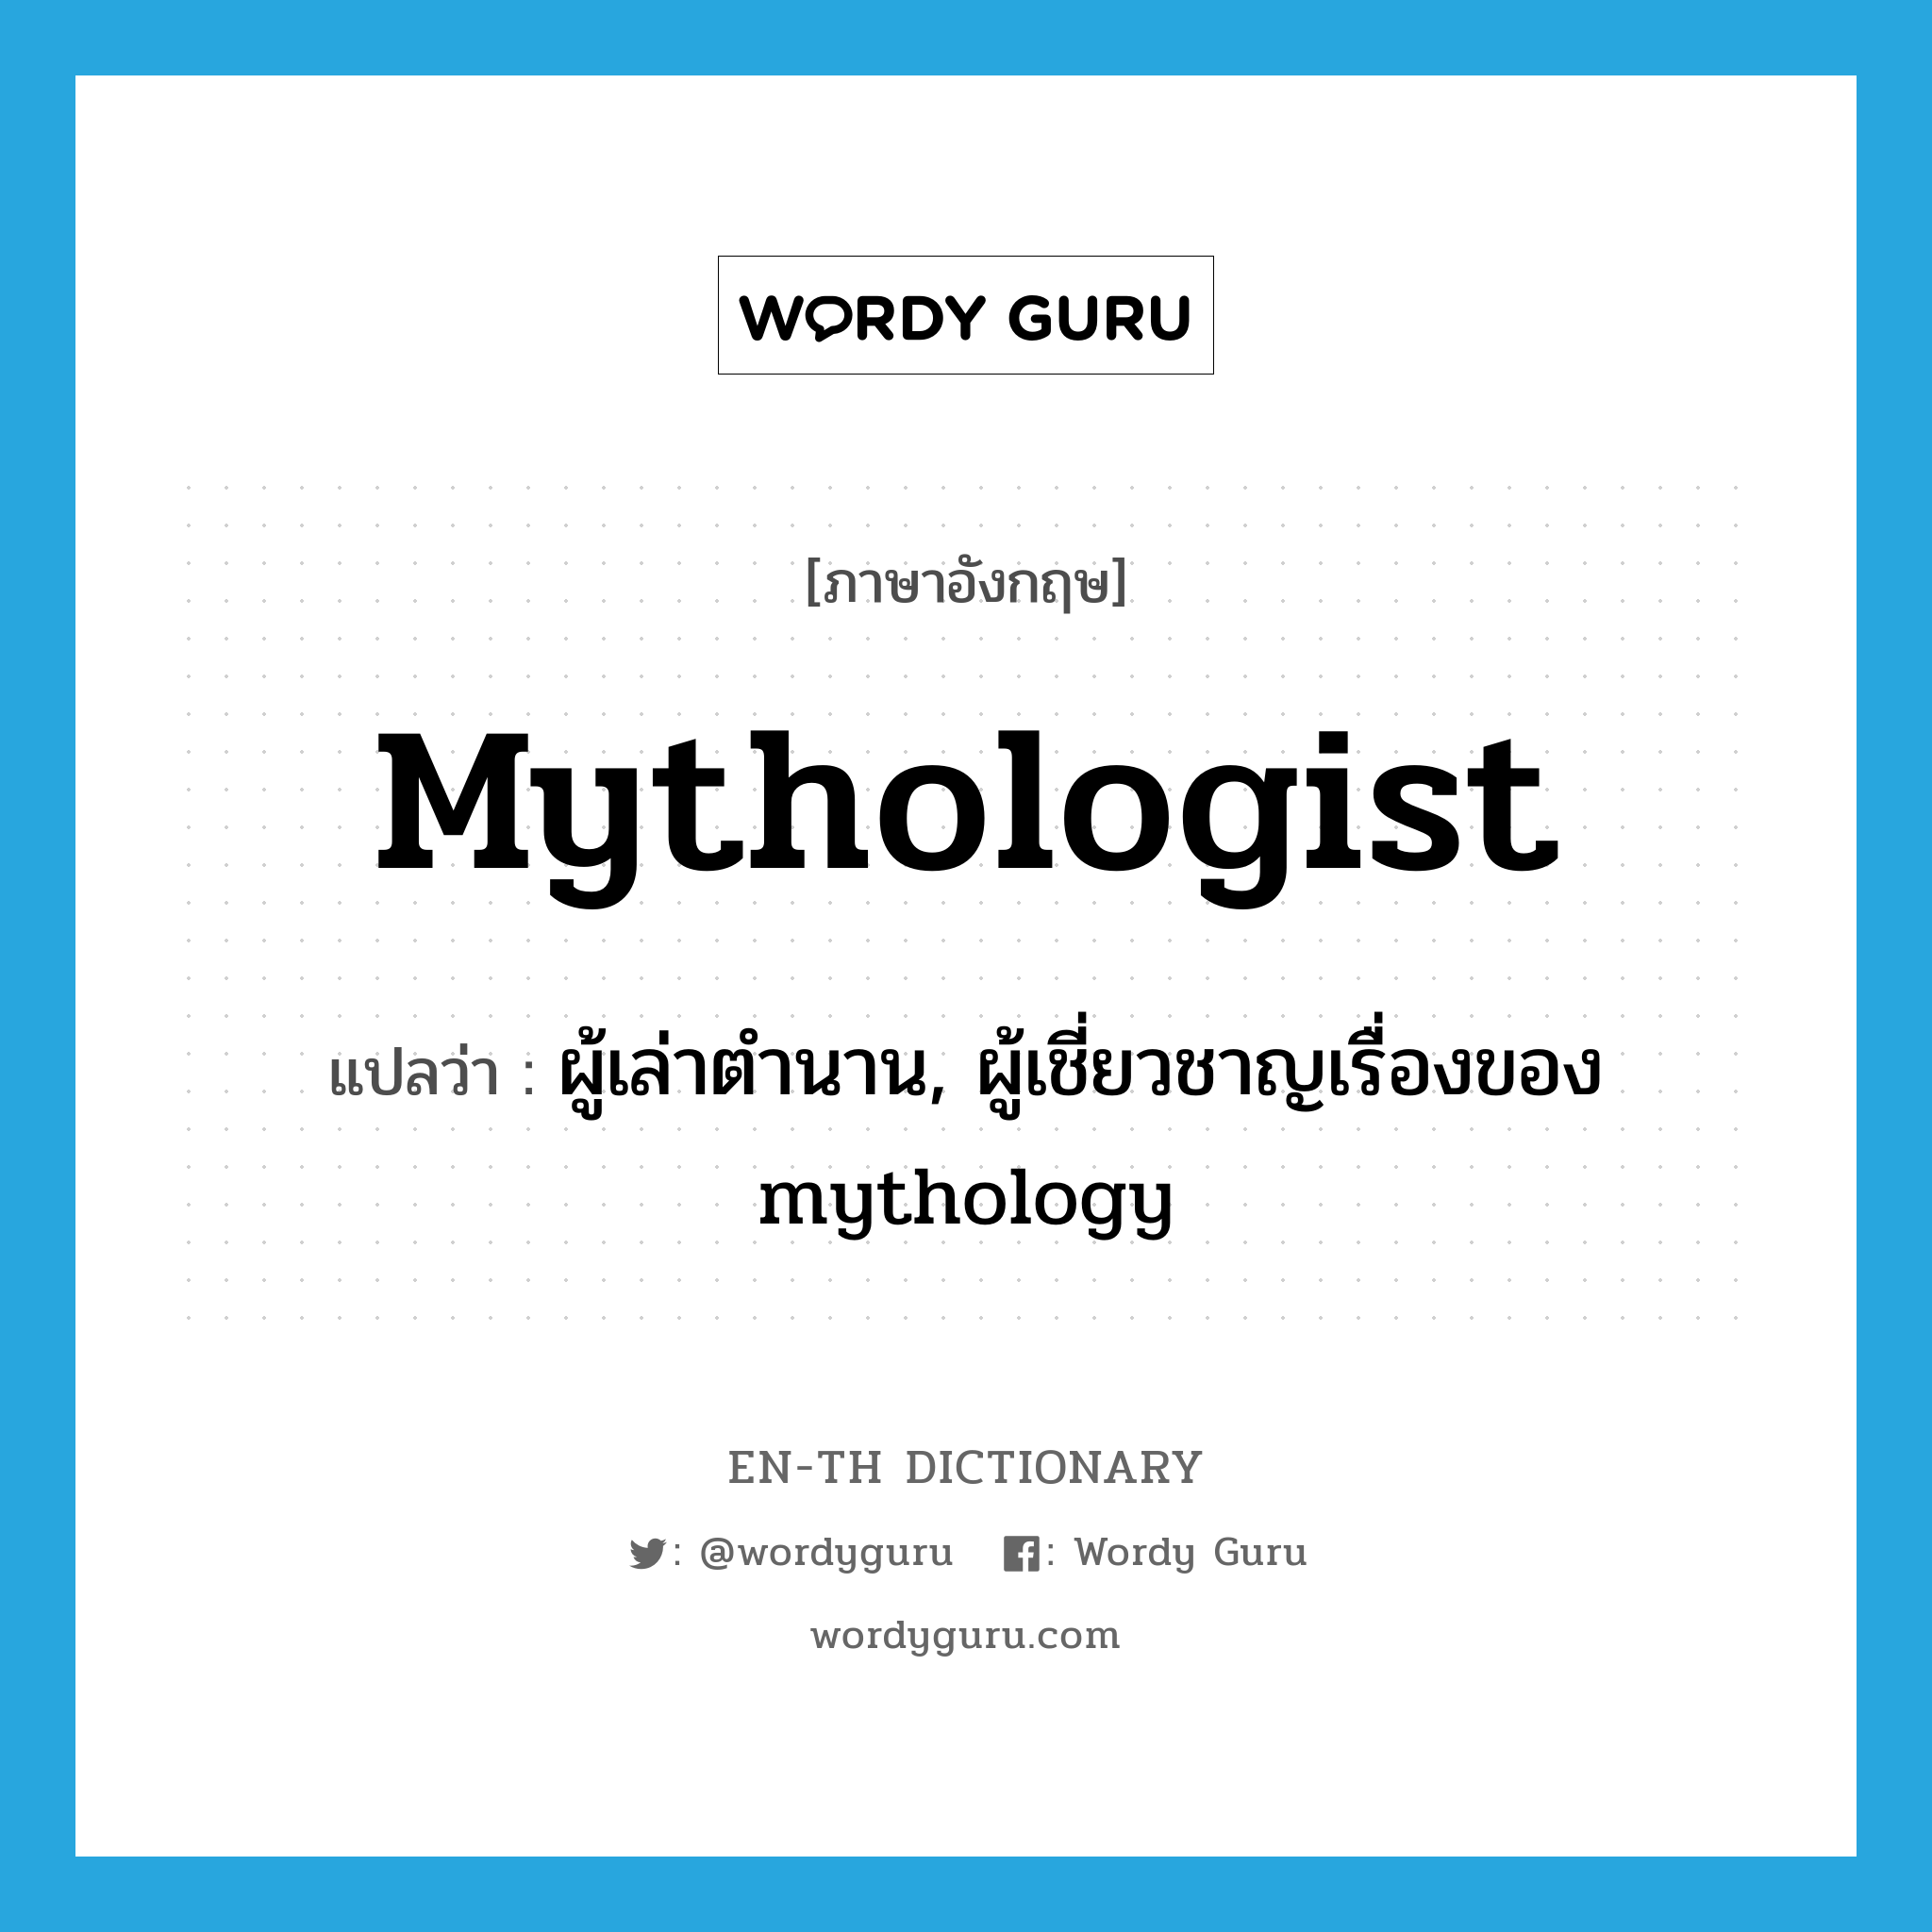 ผู้เล่าตำนาน, ผู้เชี่ยวชาญเรื่องของ mythology ภาษาอังกฤษ?, คำศัพท์ภาษาอังกฤษ ผู้เล่าตำนาน, ผู้เชี่ยวชาญเรื่องของ mythology แปลว่า mythologist ประเภท N หมวด N